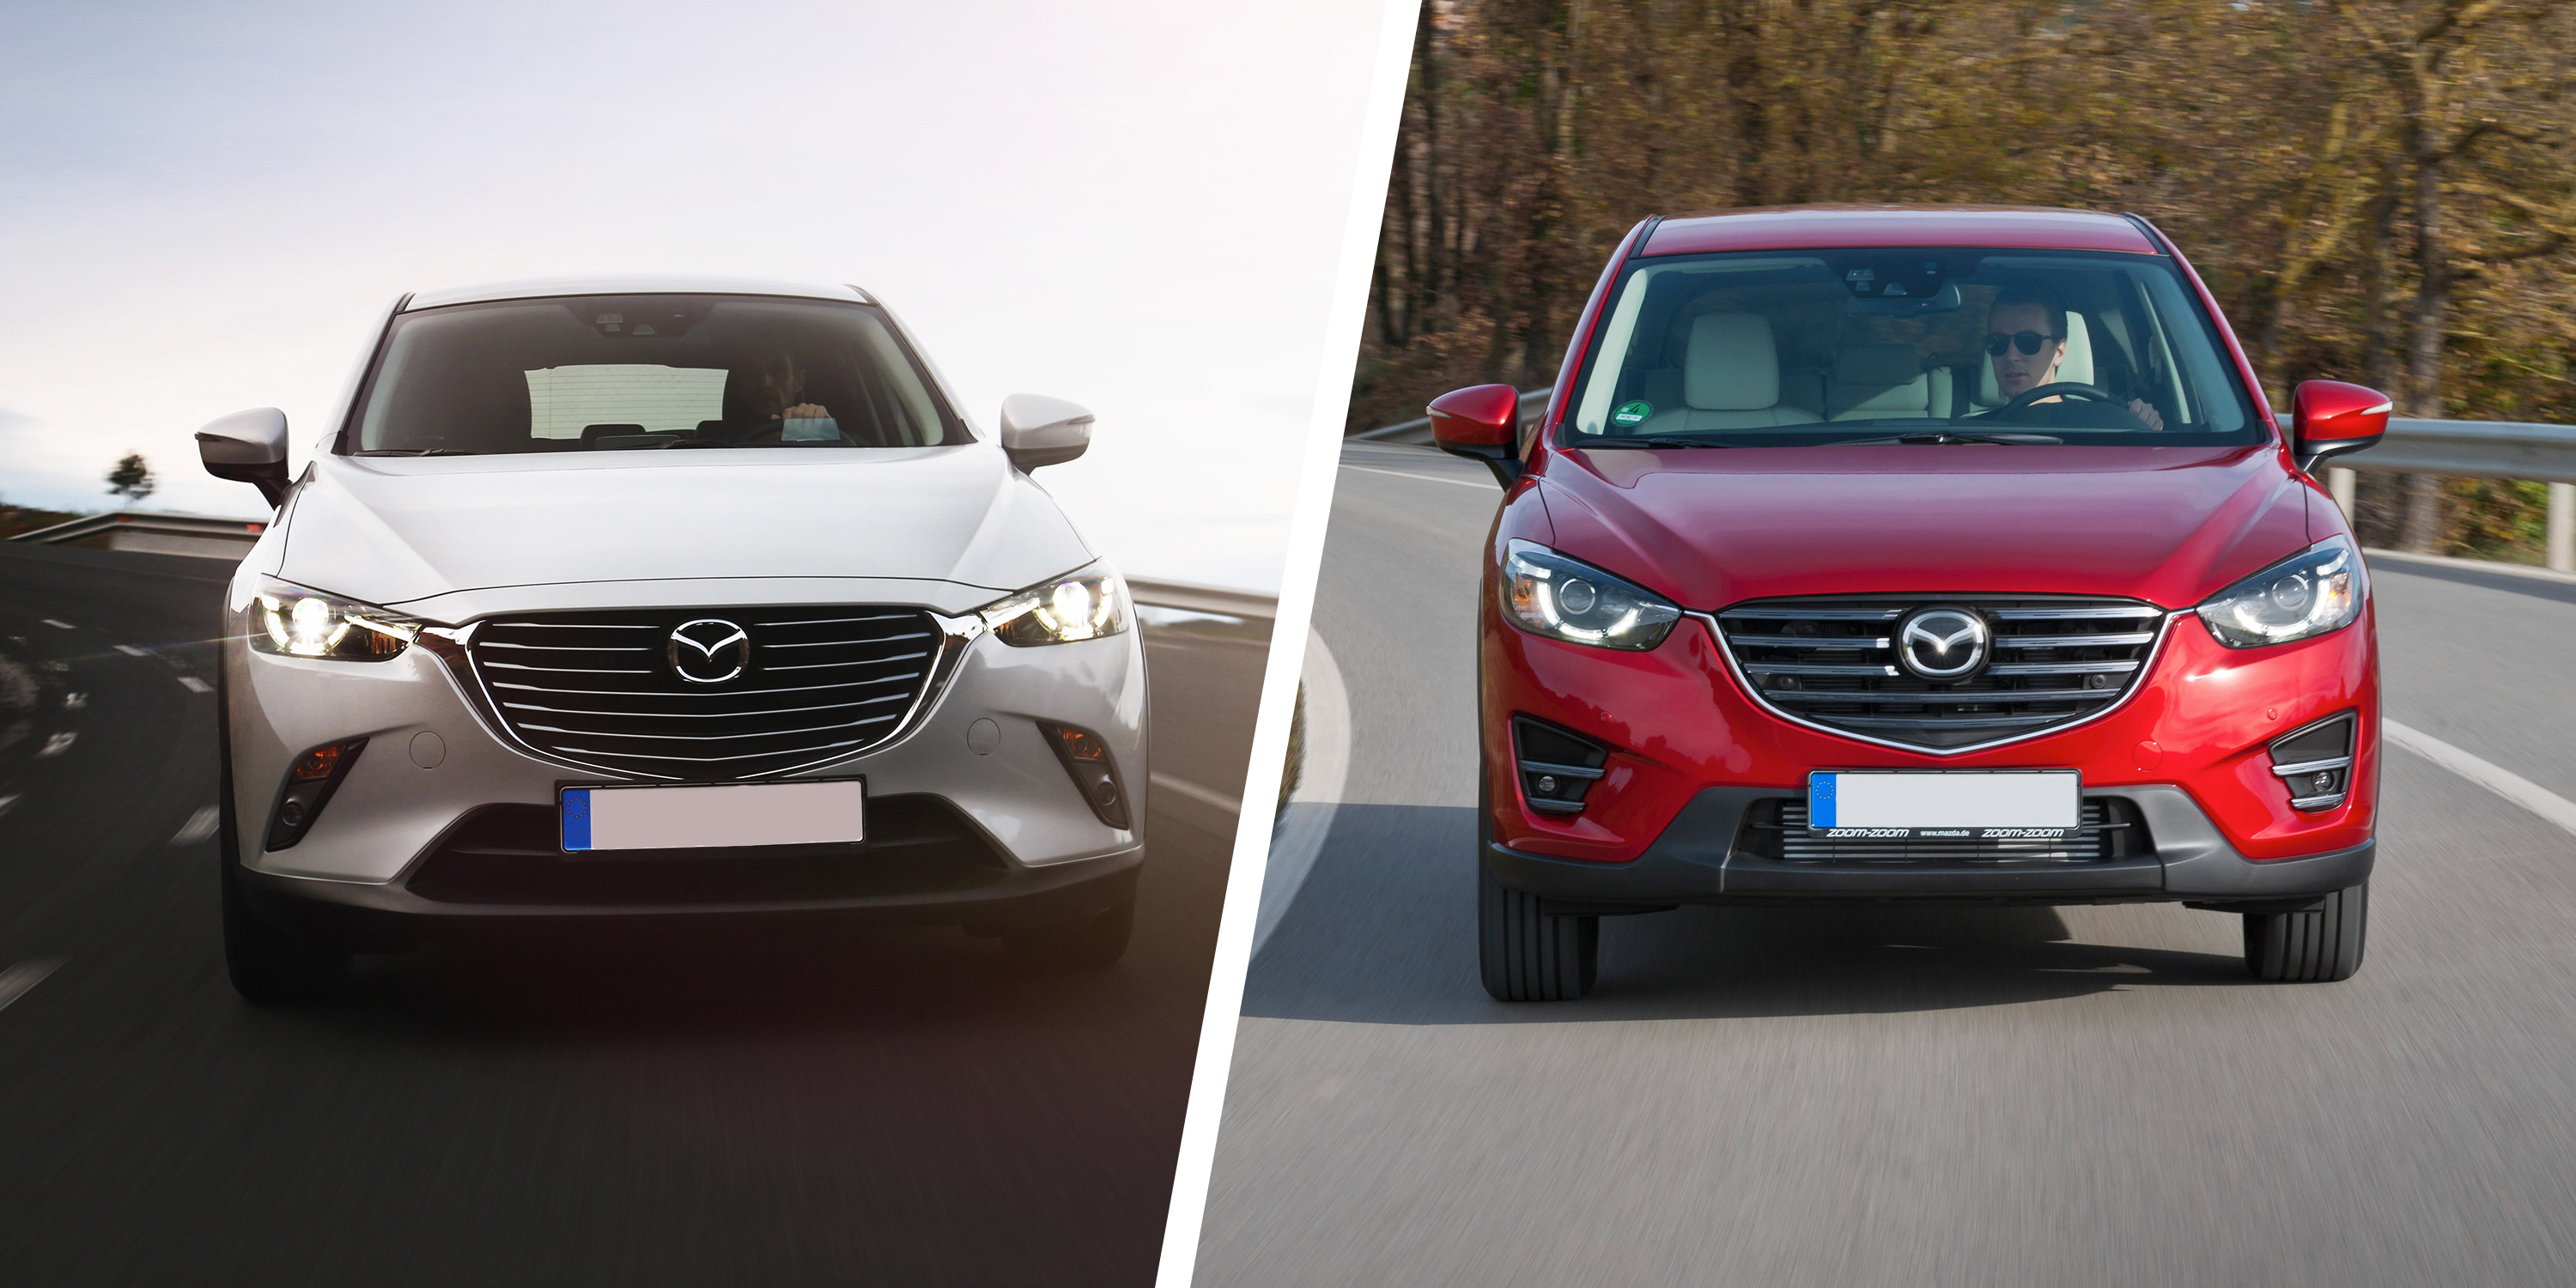 2016 Mazda CX-3 vs. 2015 Mazda CX-5: What's the Difference? - Autotrader